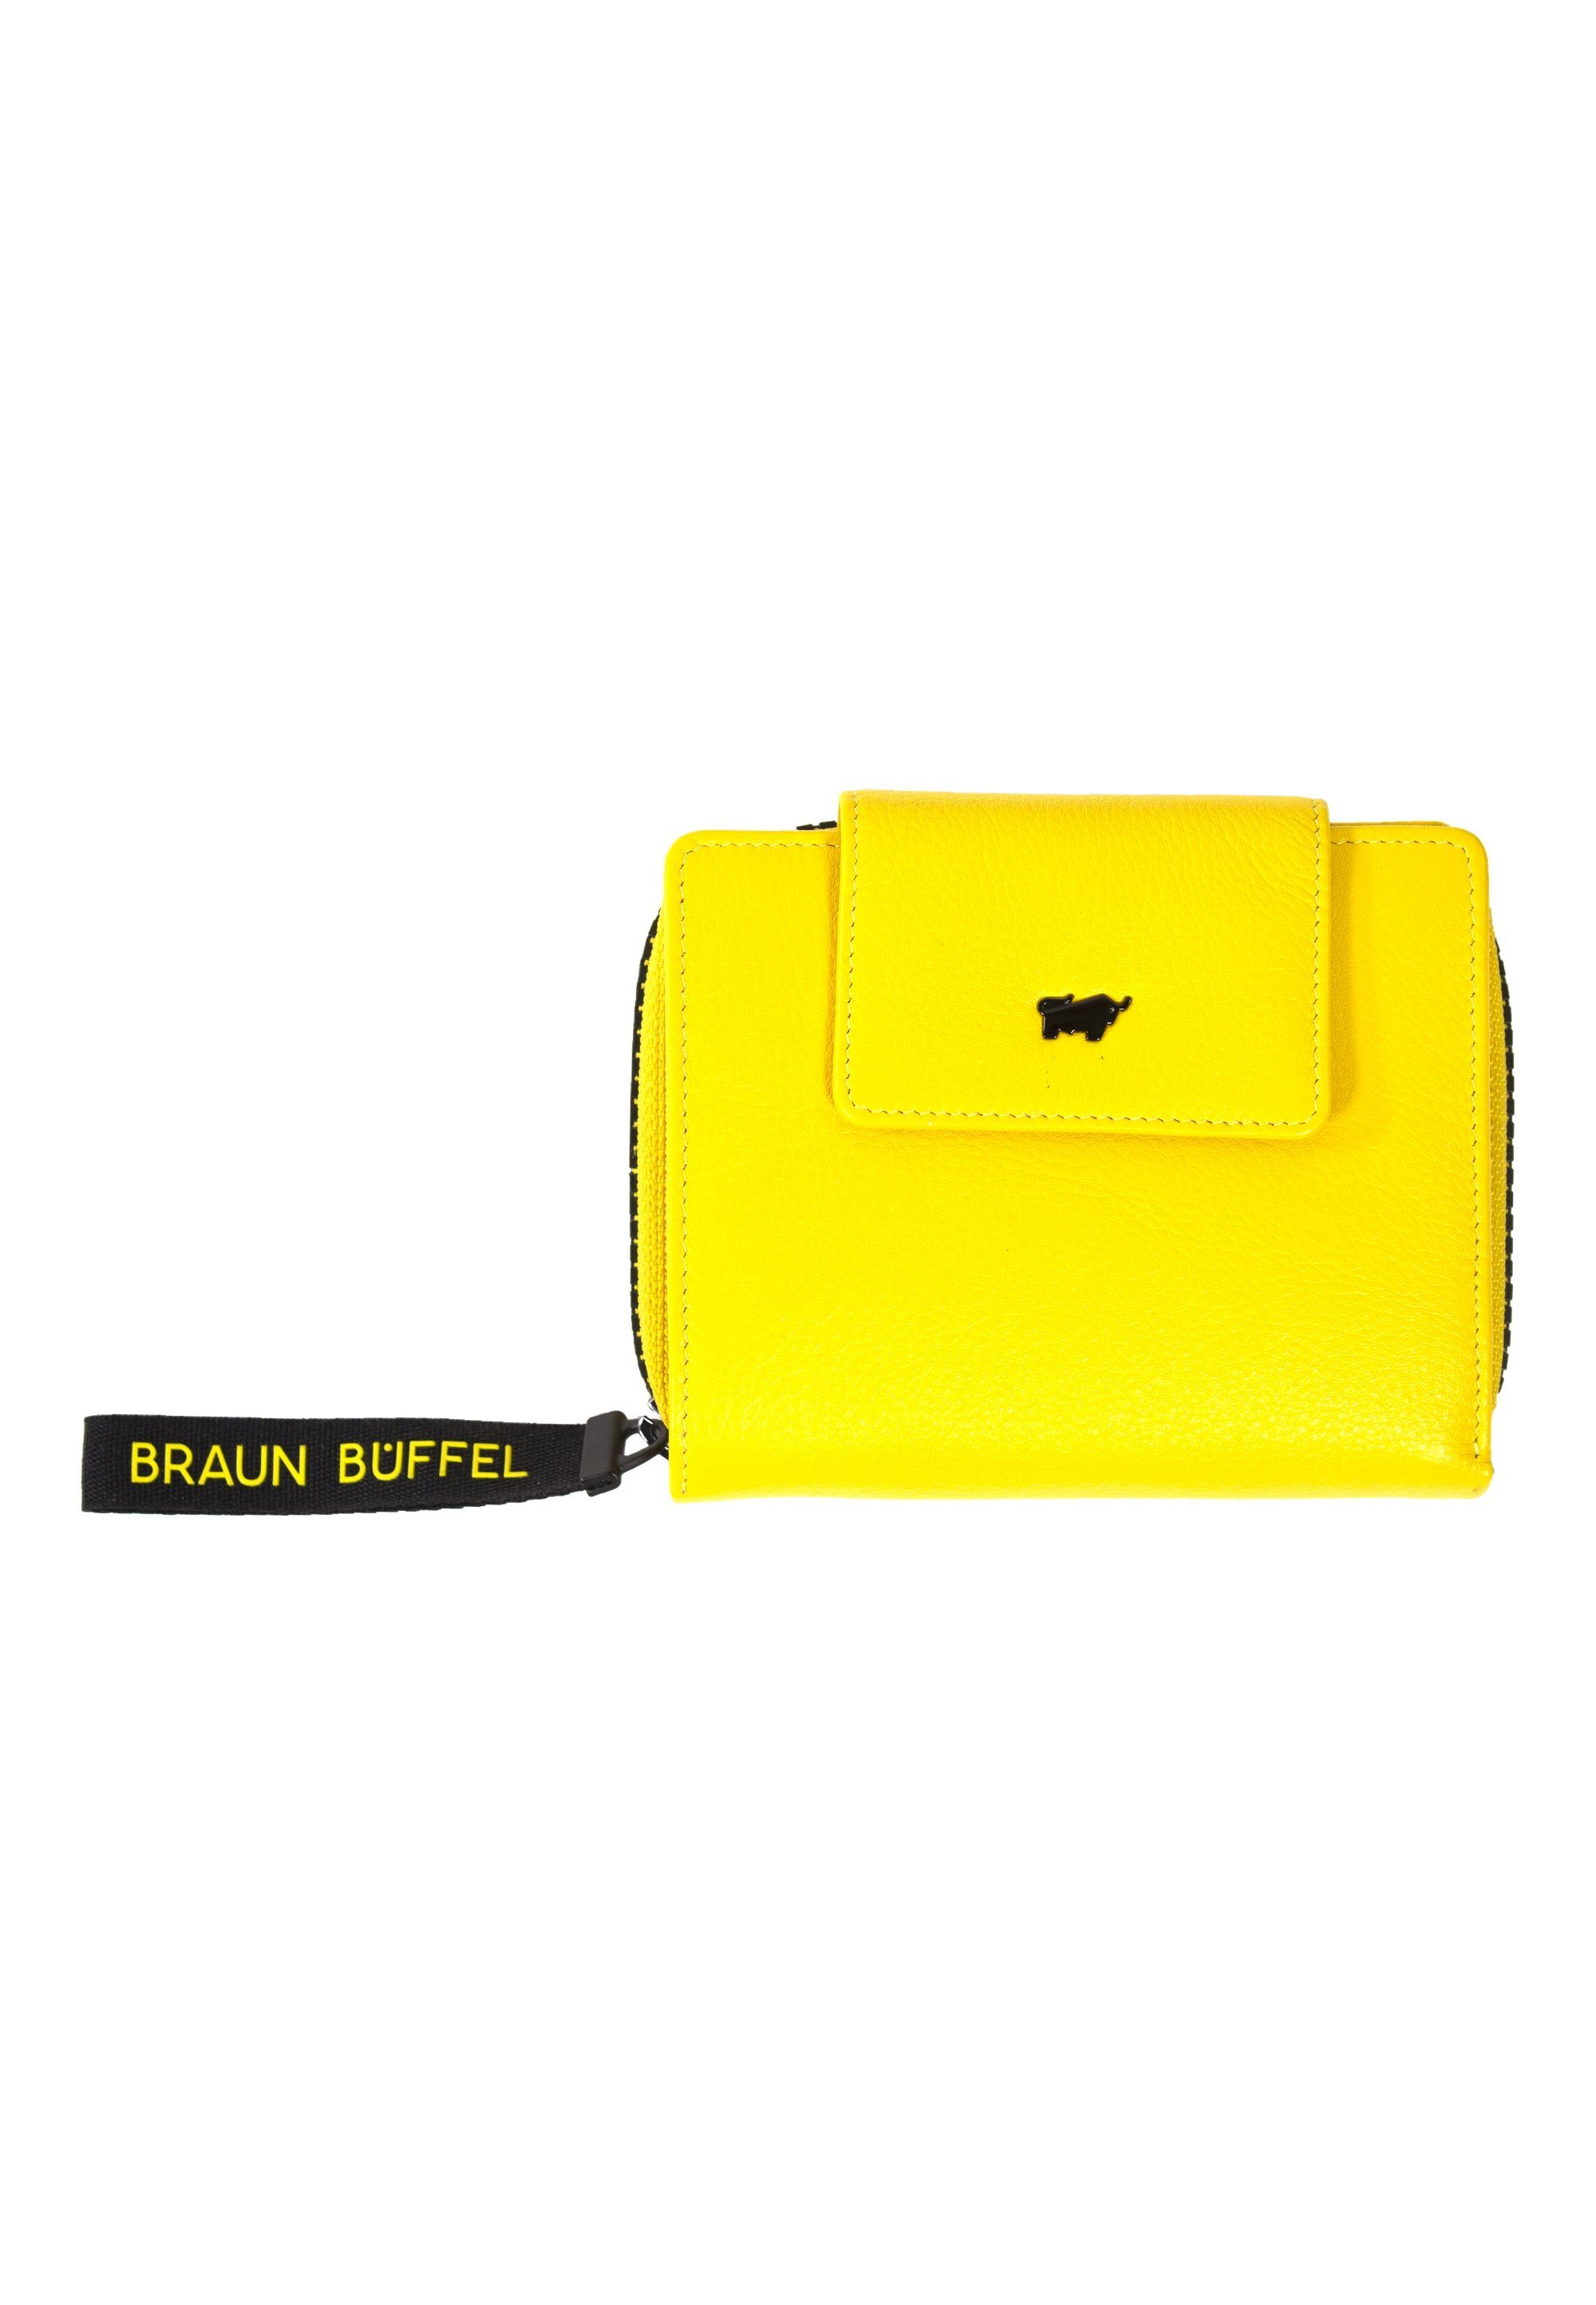 Braun Büffel ZIP-Band Yellow Geldbörse mit stylischem CAPRI